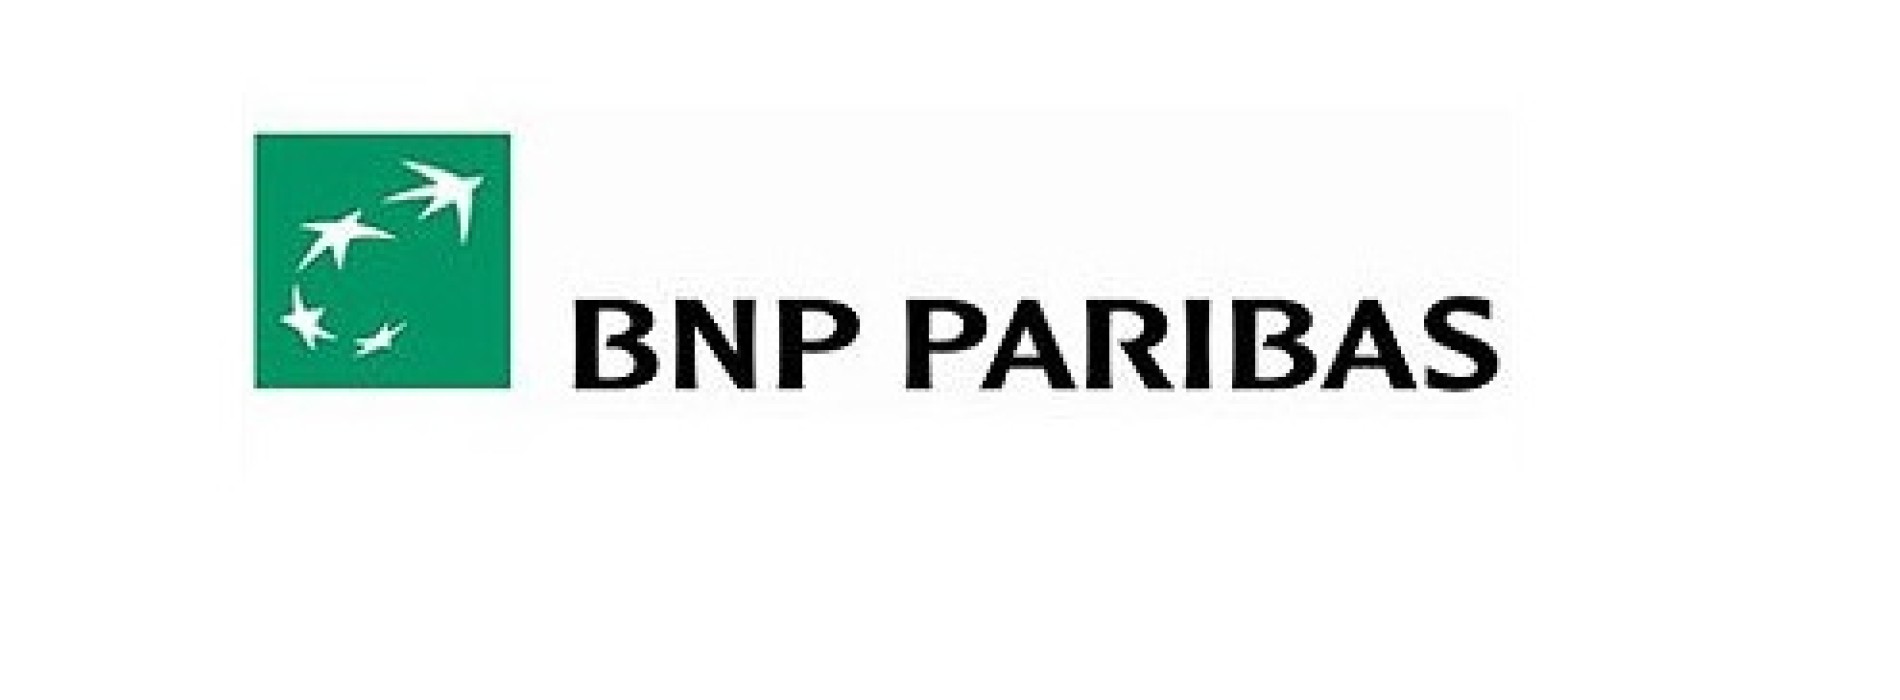 EuroStars III w ofercie BNP Paribas Banku Polska